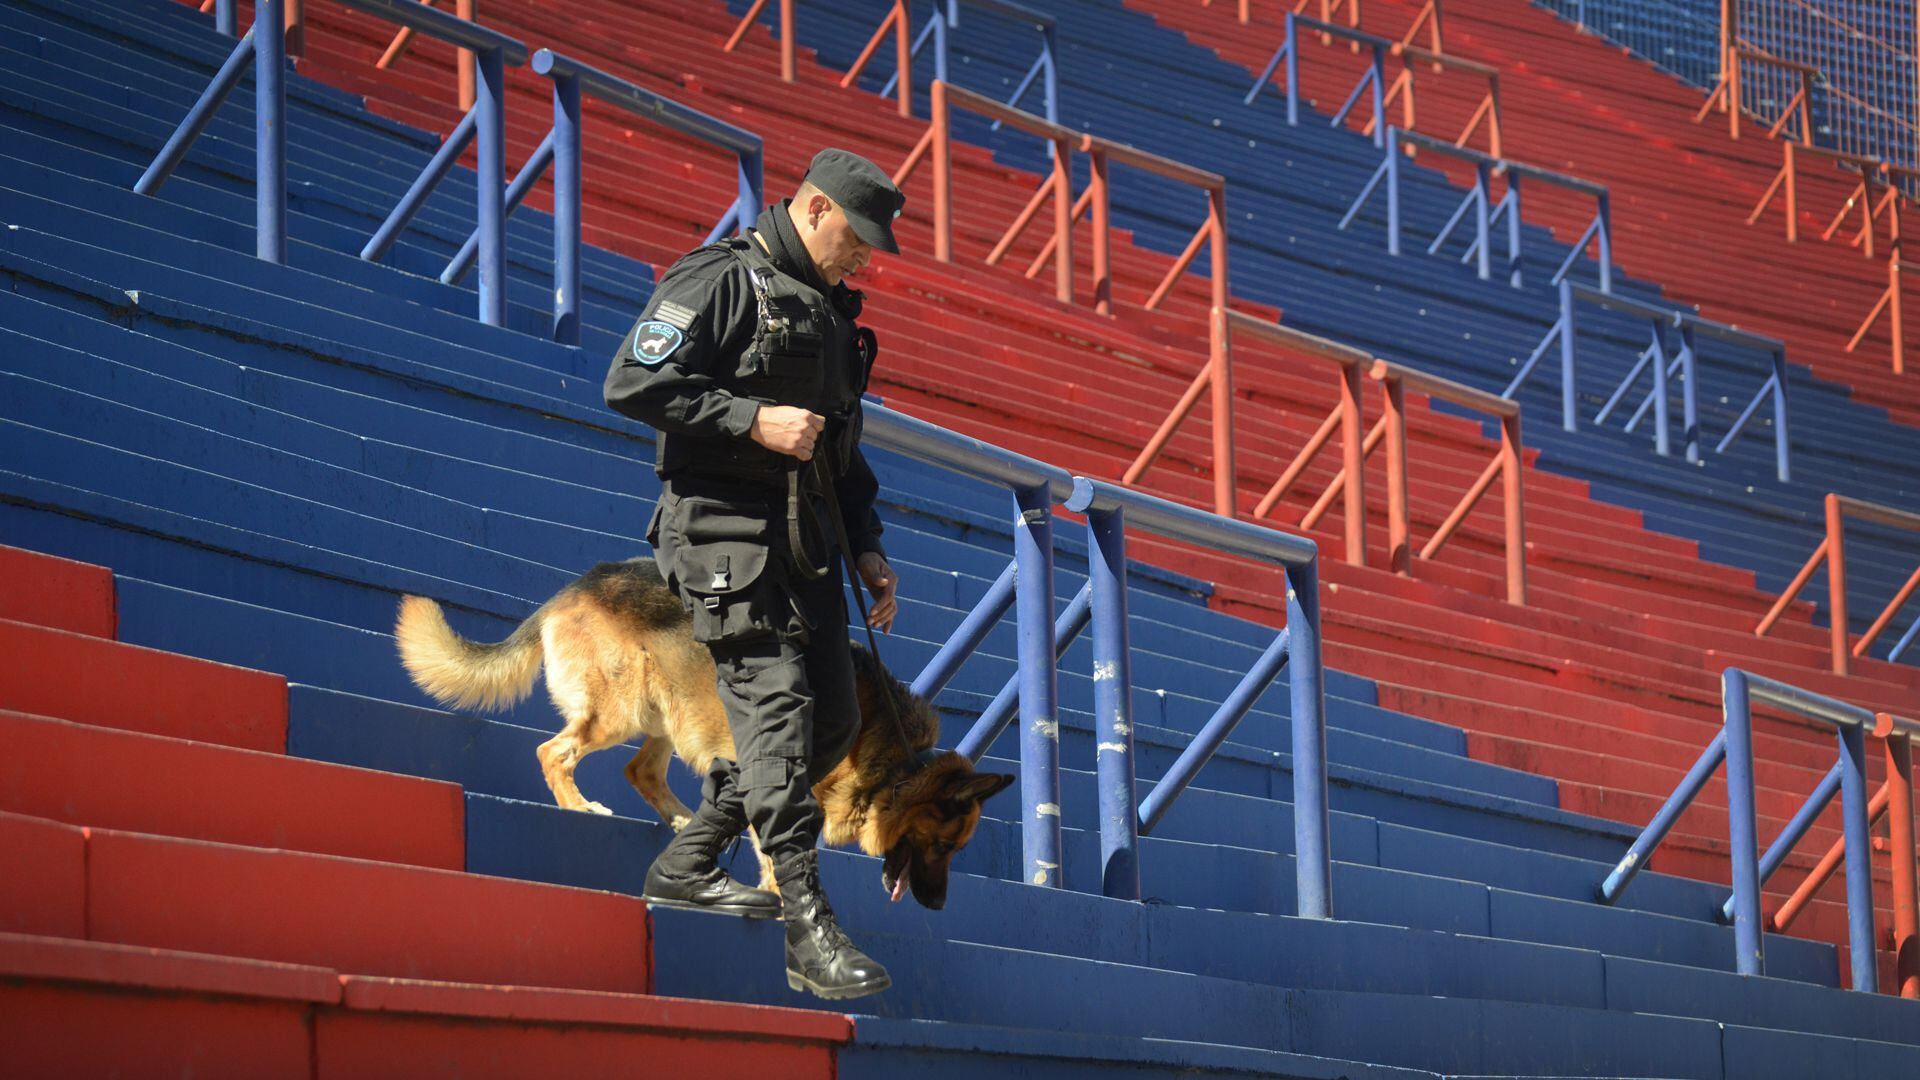 Previo al inicio de cada partido de fútbol, policías y perros recorren las tribunas en busca de explosivos. Foto: Fernando Calzada.